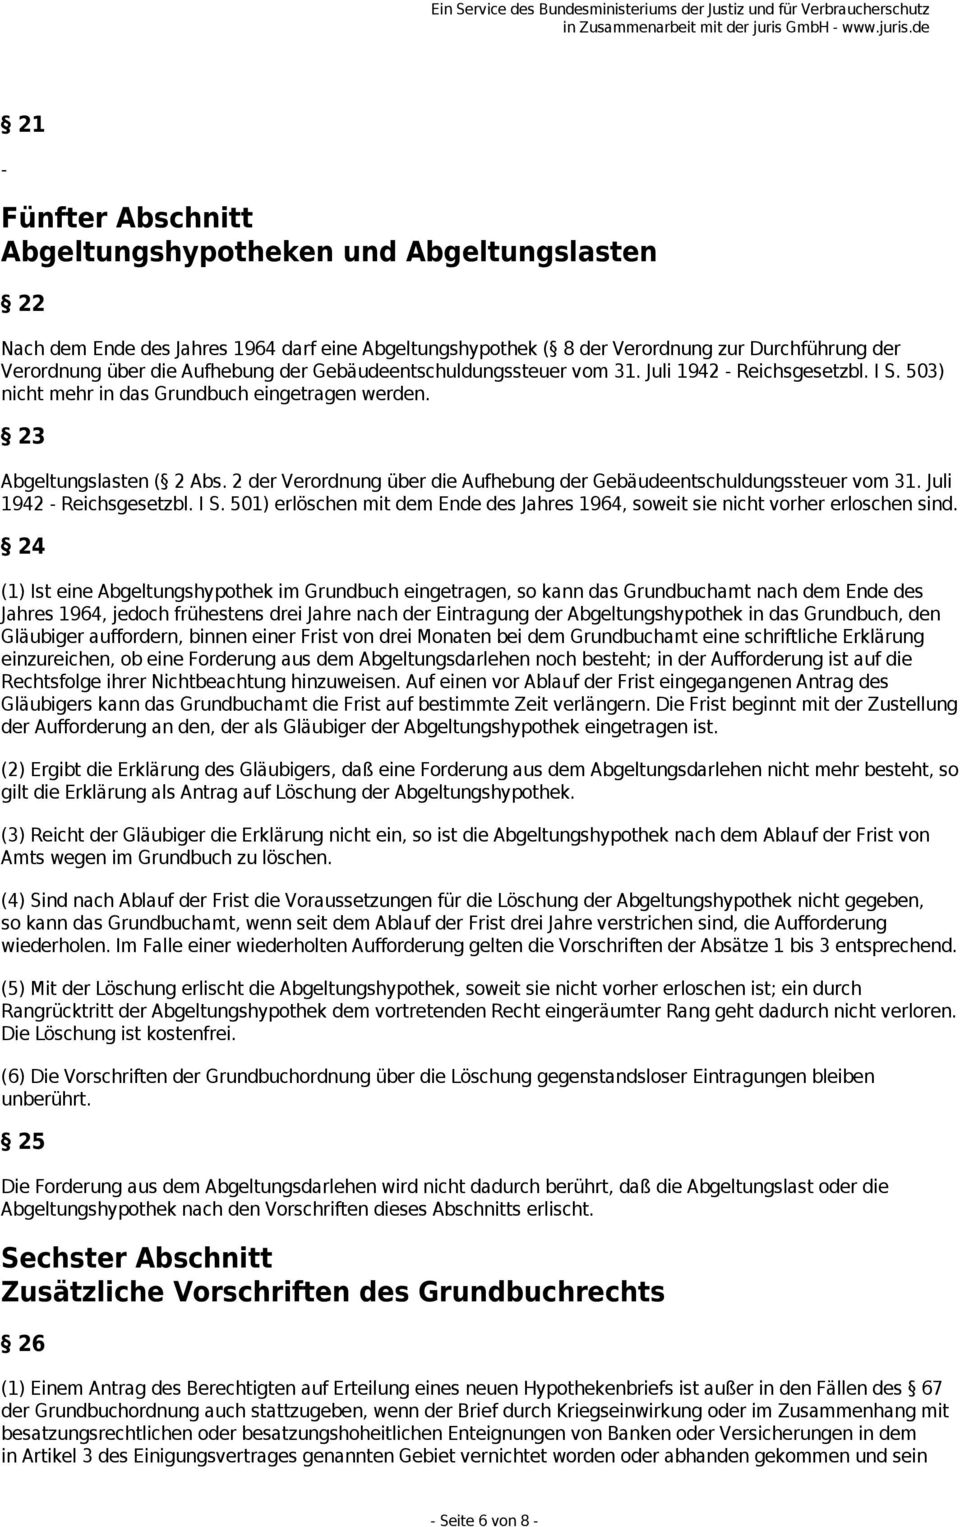 2 der Verordnung über die Aufhebung der Gebäudeentschuldungssteuer vom 31. Juli 1942 Reichsgesetzbl. I S. 501) erlöschen mit dem Ende des Jahres 1964, soweit sie nicht vorher erloschen sind.